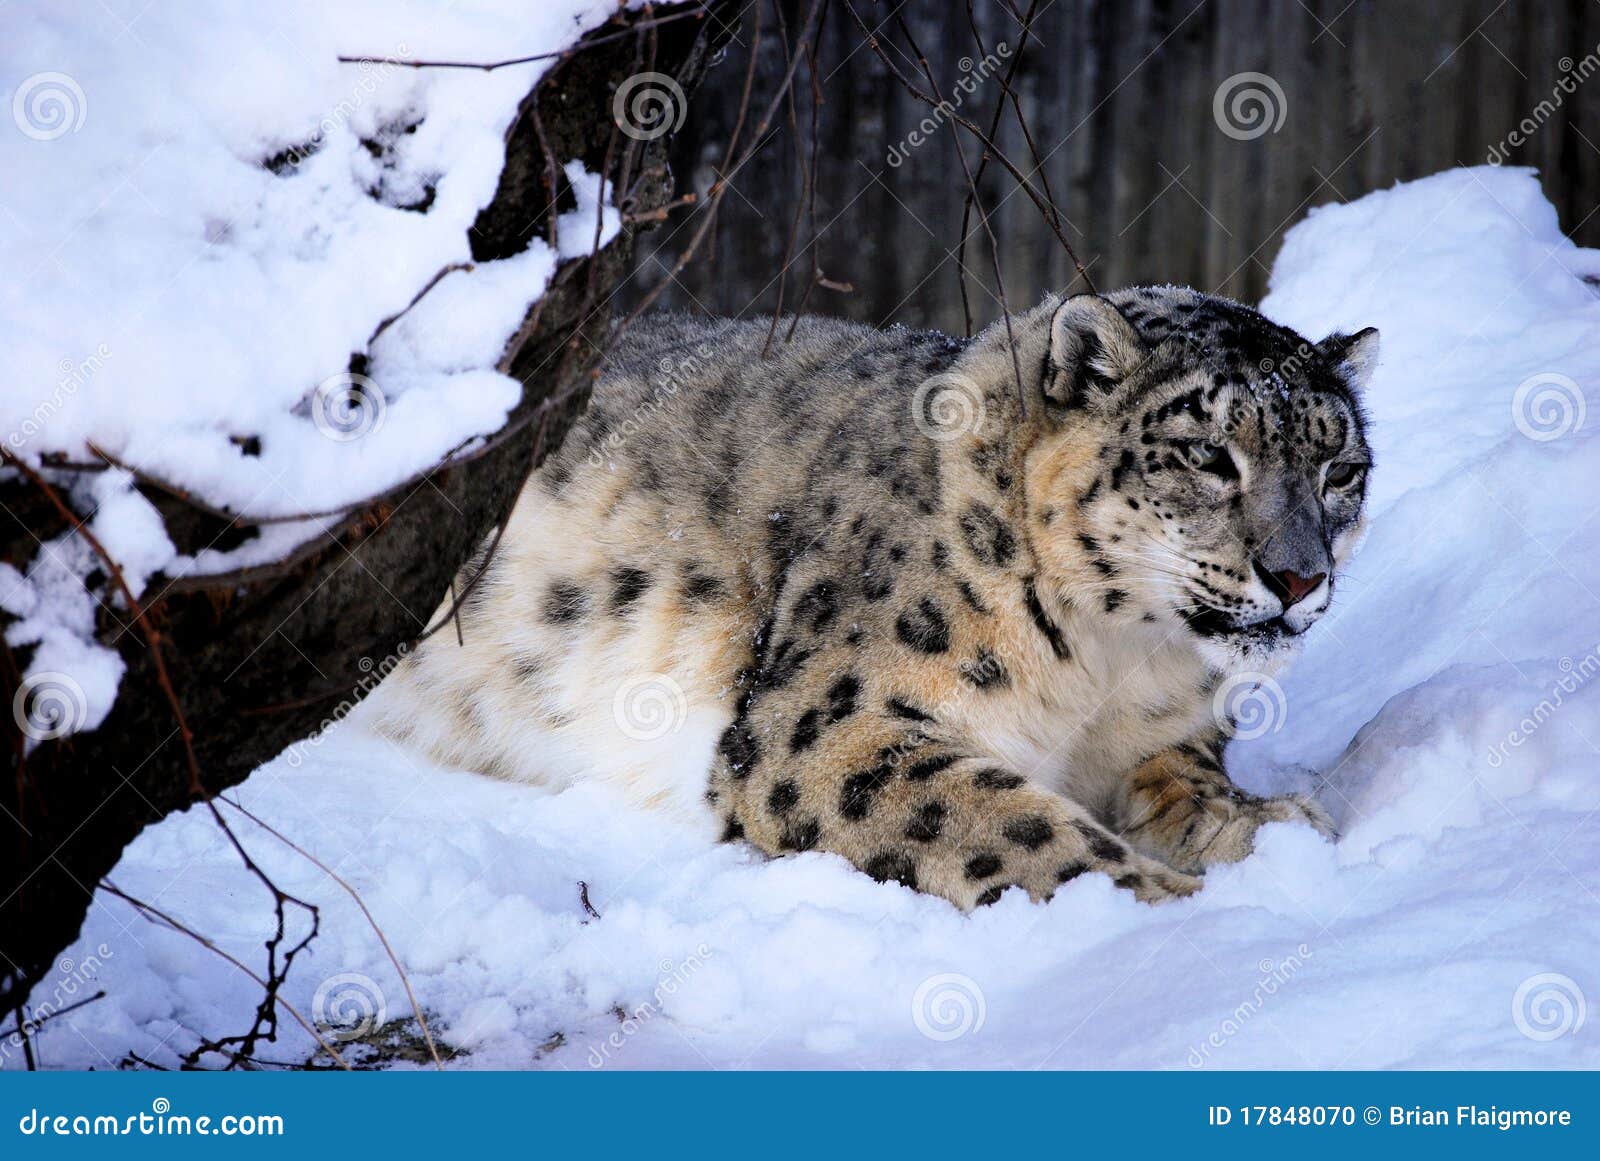 Snow Leopard  Saint Louis Zoo